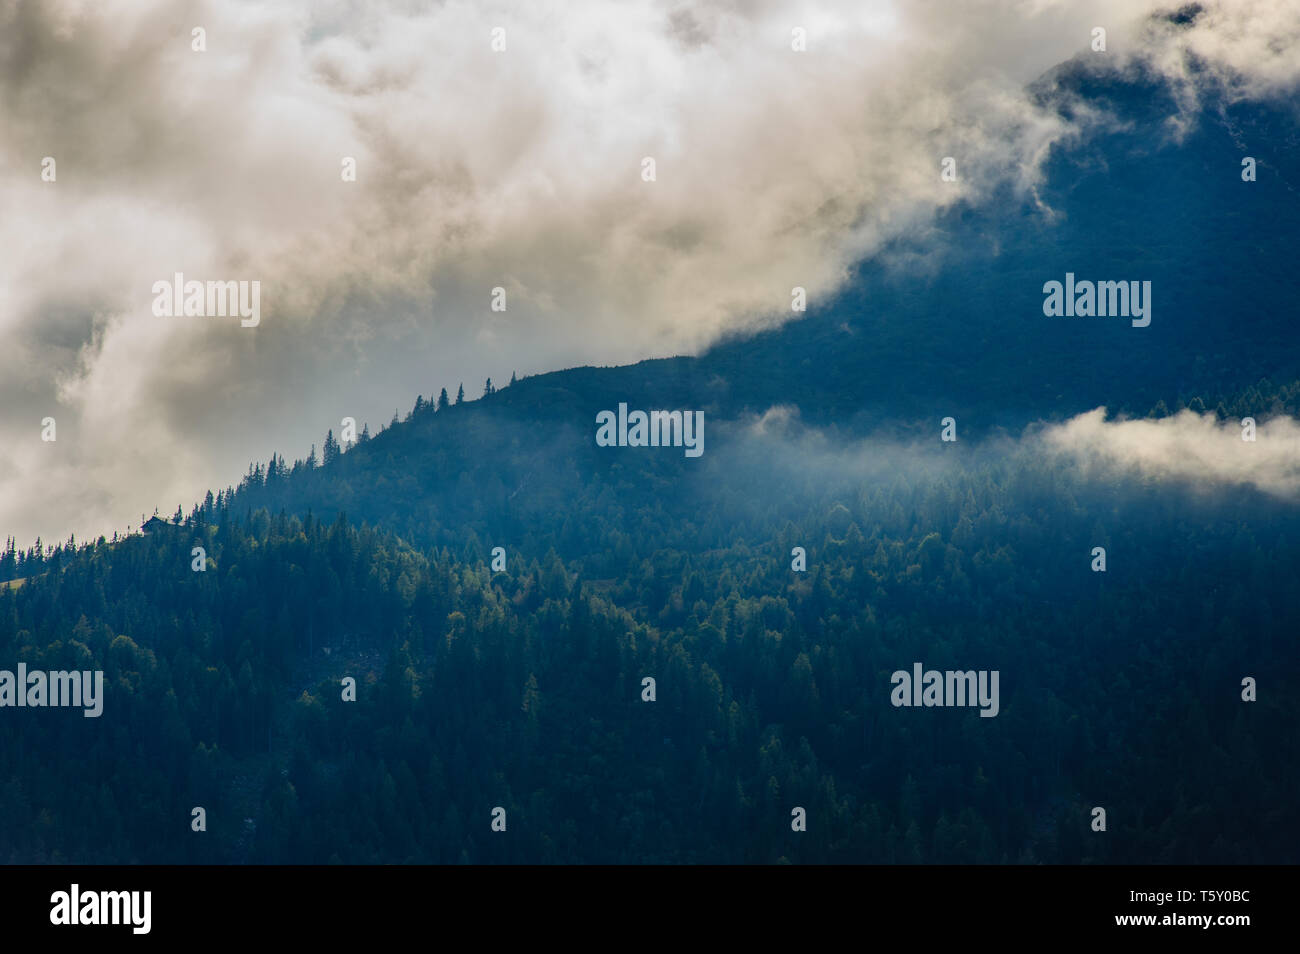 Schönen Berg Szene des Wettersteingebirges in Österreich in schlechtem regnerischen Wetter mit dramatisch und Mystic aufstand Nebel auf den Wald erfasst Stockfoto